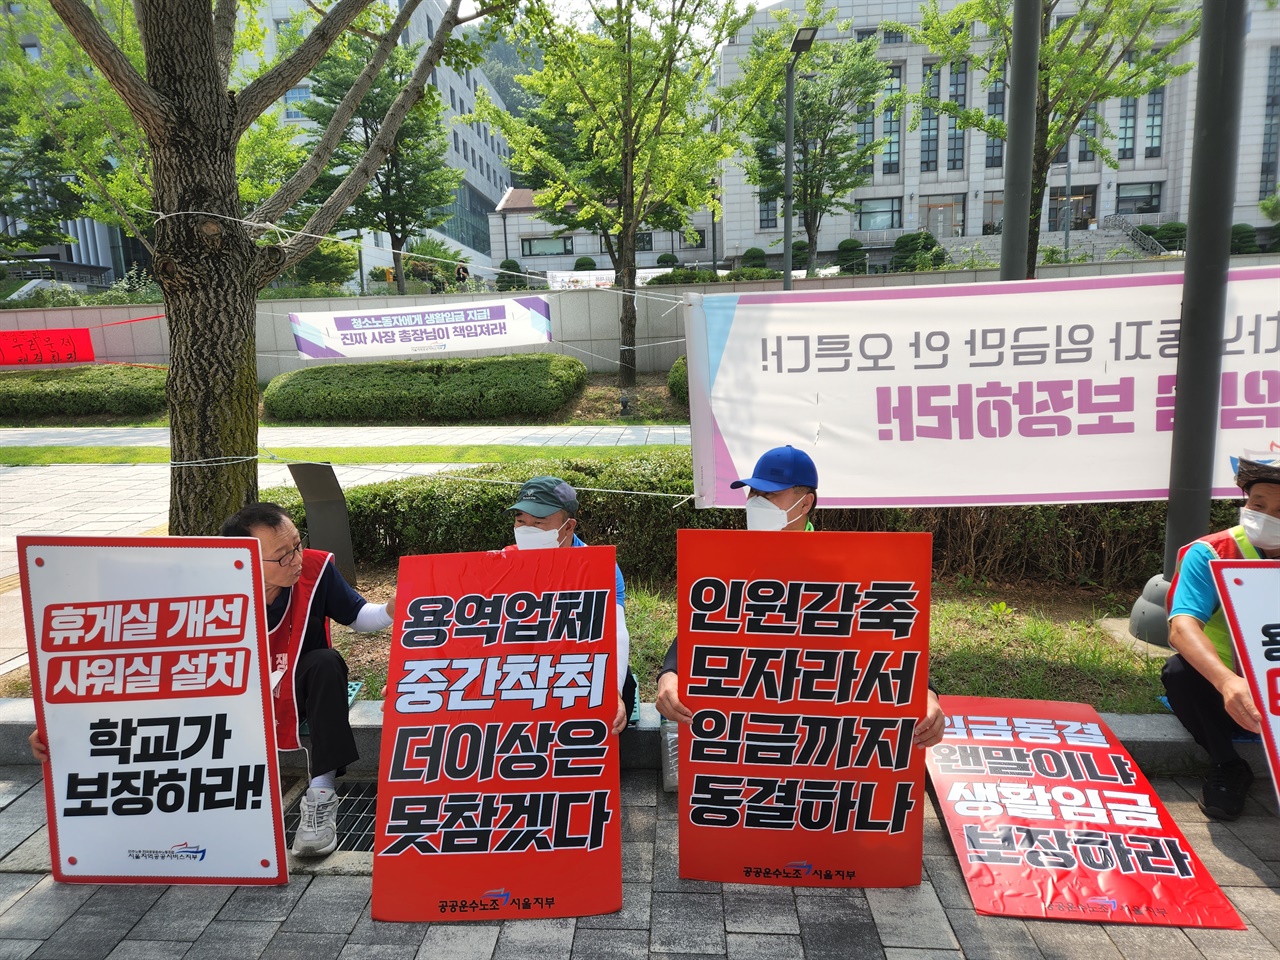 지난 7월 5일, 오전 시위에 나서기 전 연세대 청소노동자들이 플래카드를 들고 바닥에 앉아 있는 모습. 